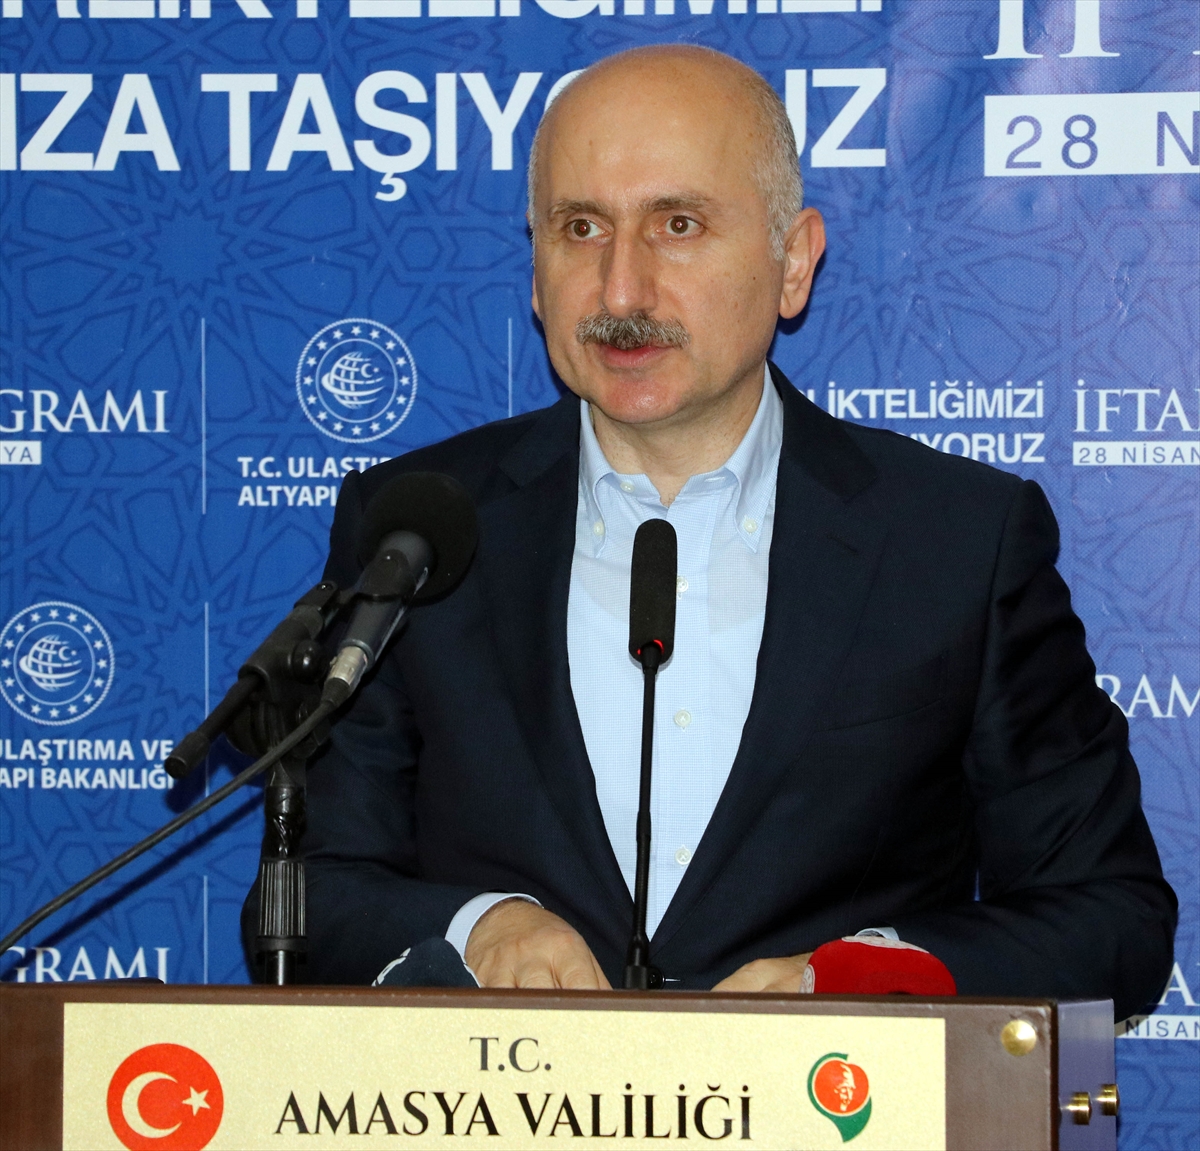 Ulaştırma ve Altyapı Bakanı Karaismailoğlu Amasya'da iftarda konuştu: